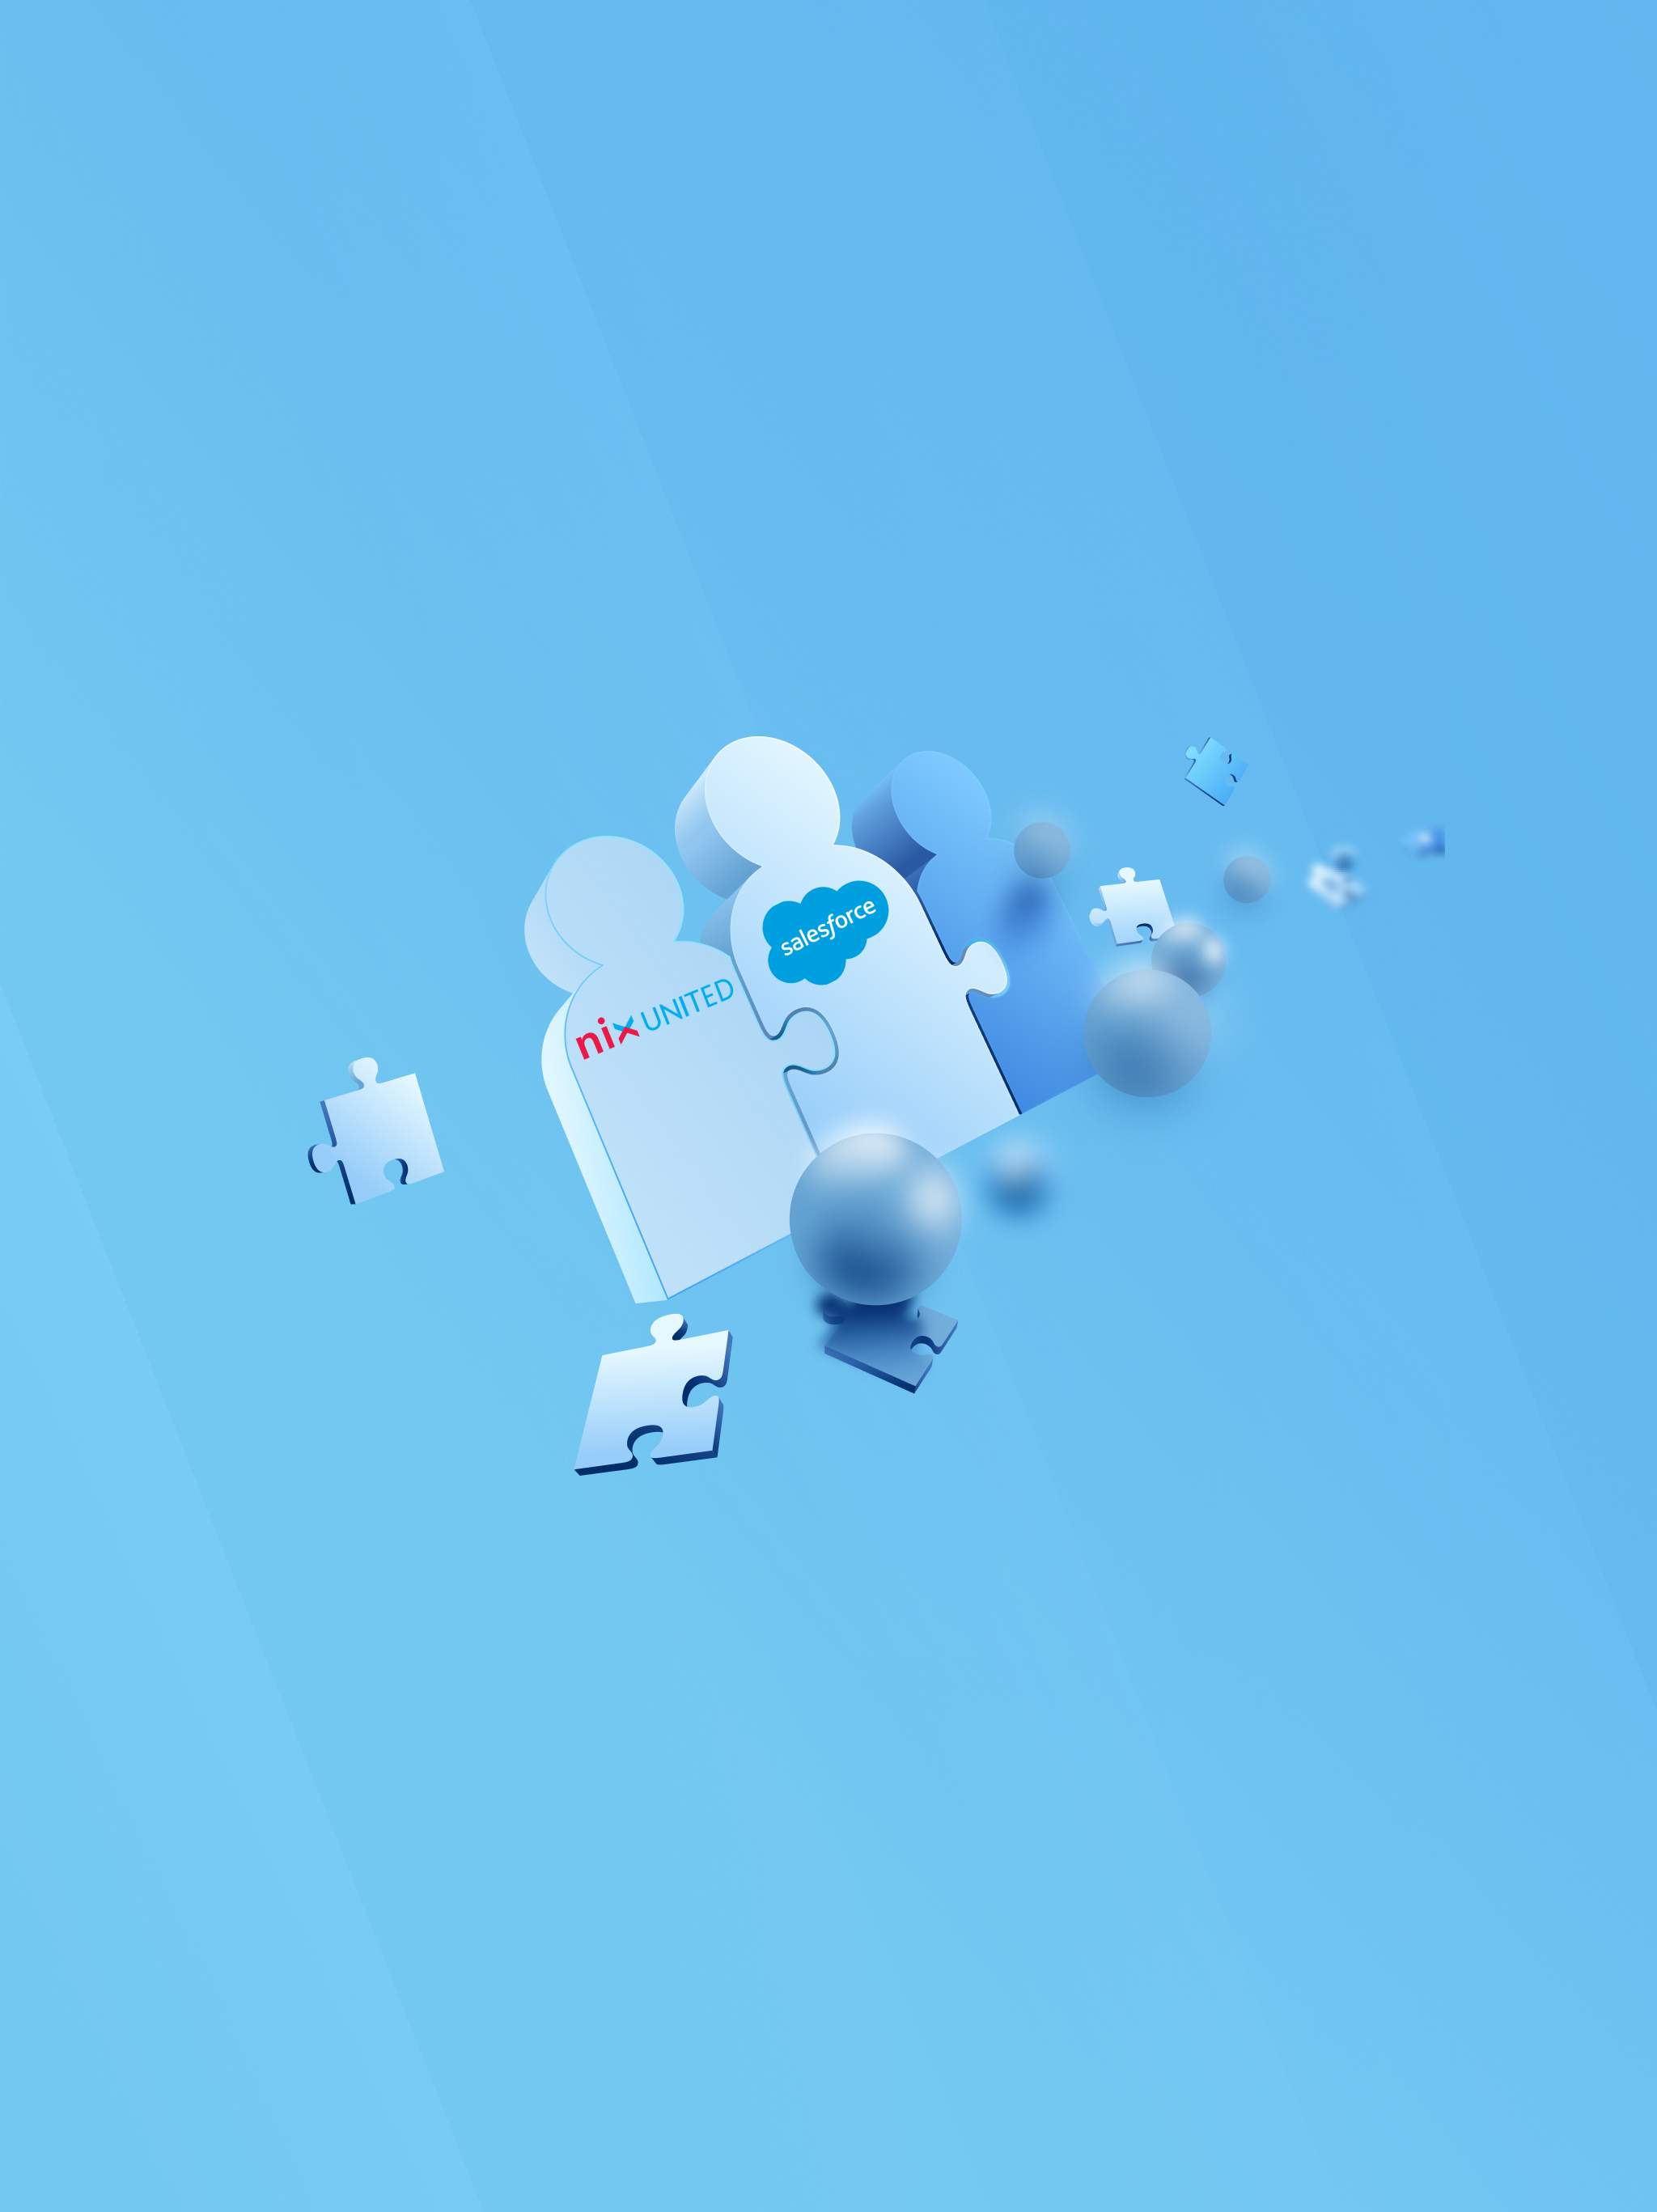 NIX United Announces NIX United Salesforce AppExchange, the World's Leading Enterprise Cloud Marketplace